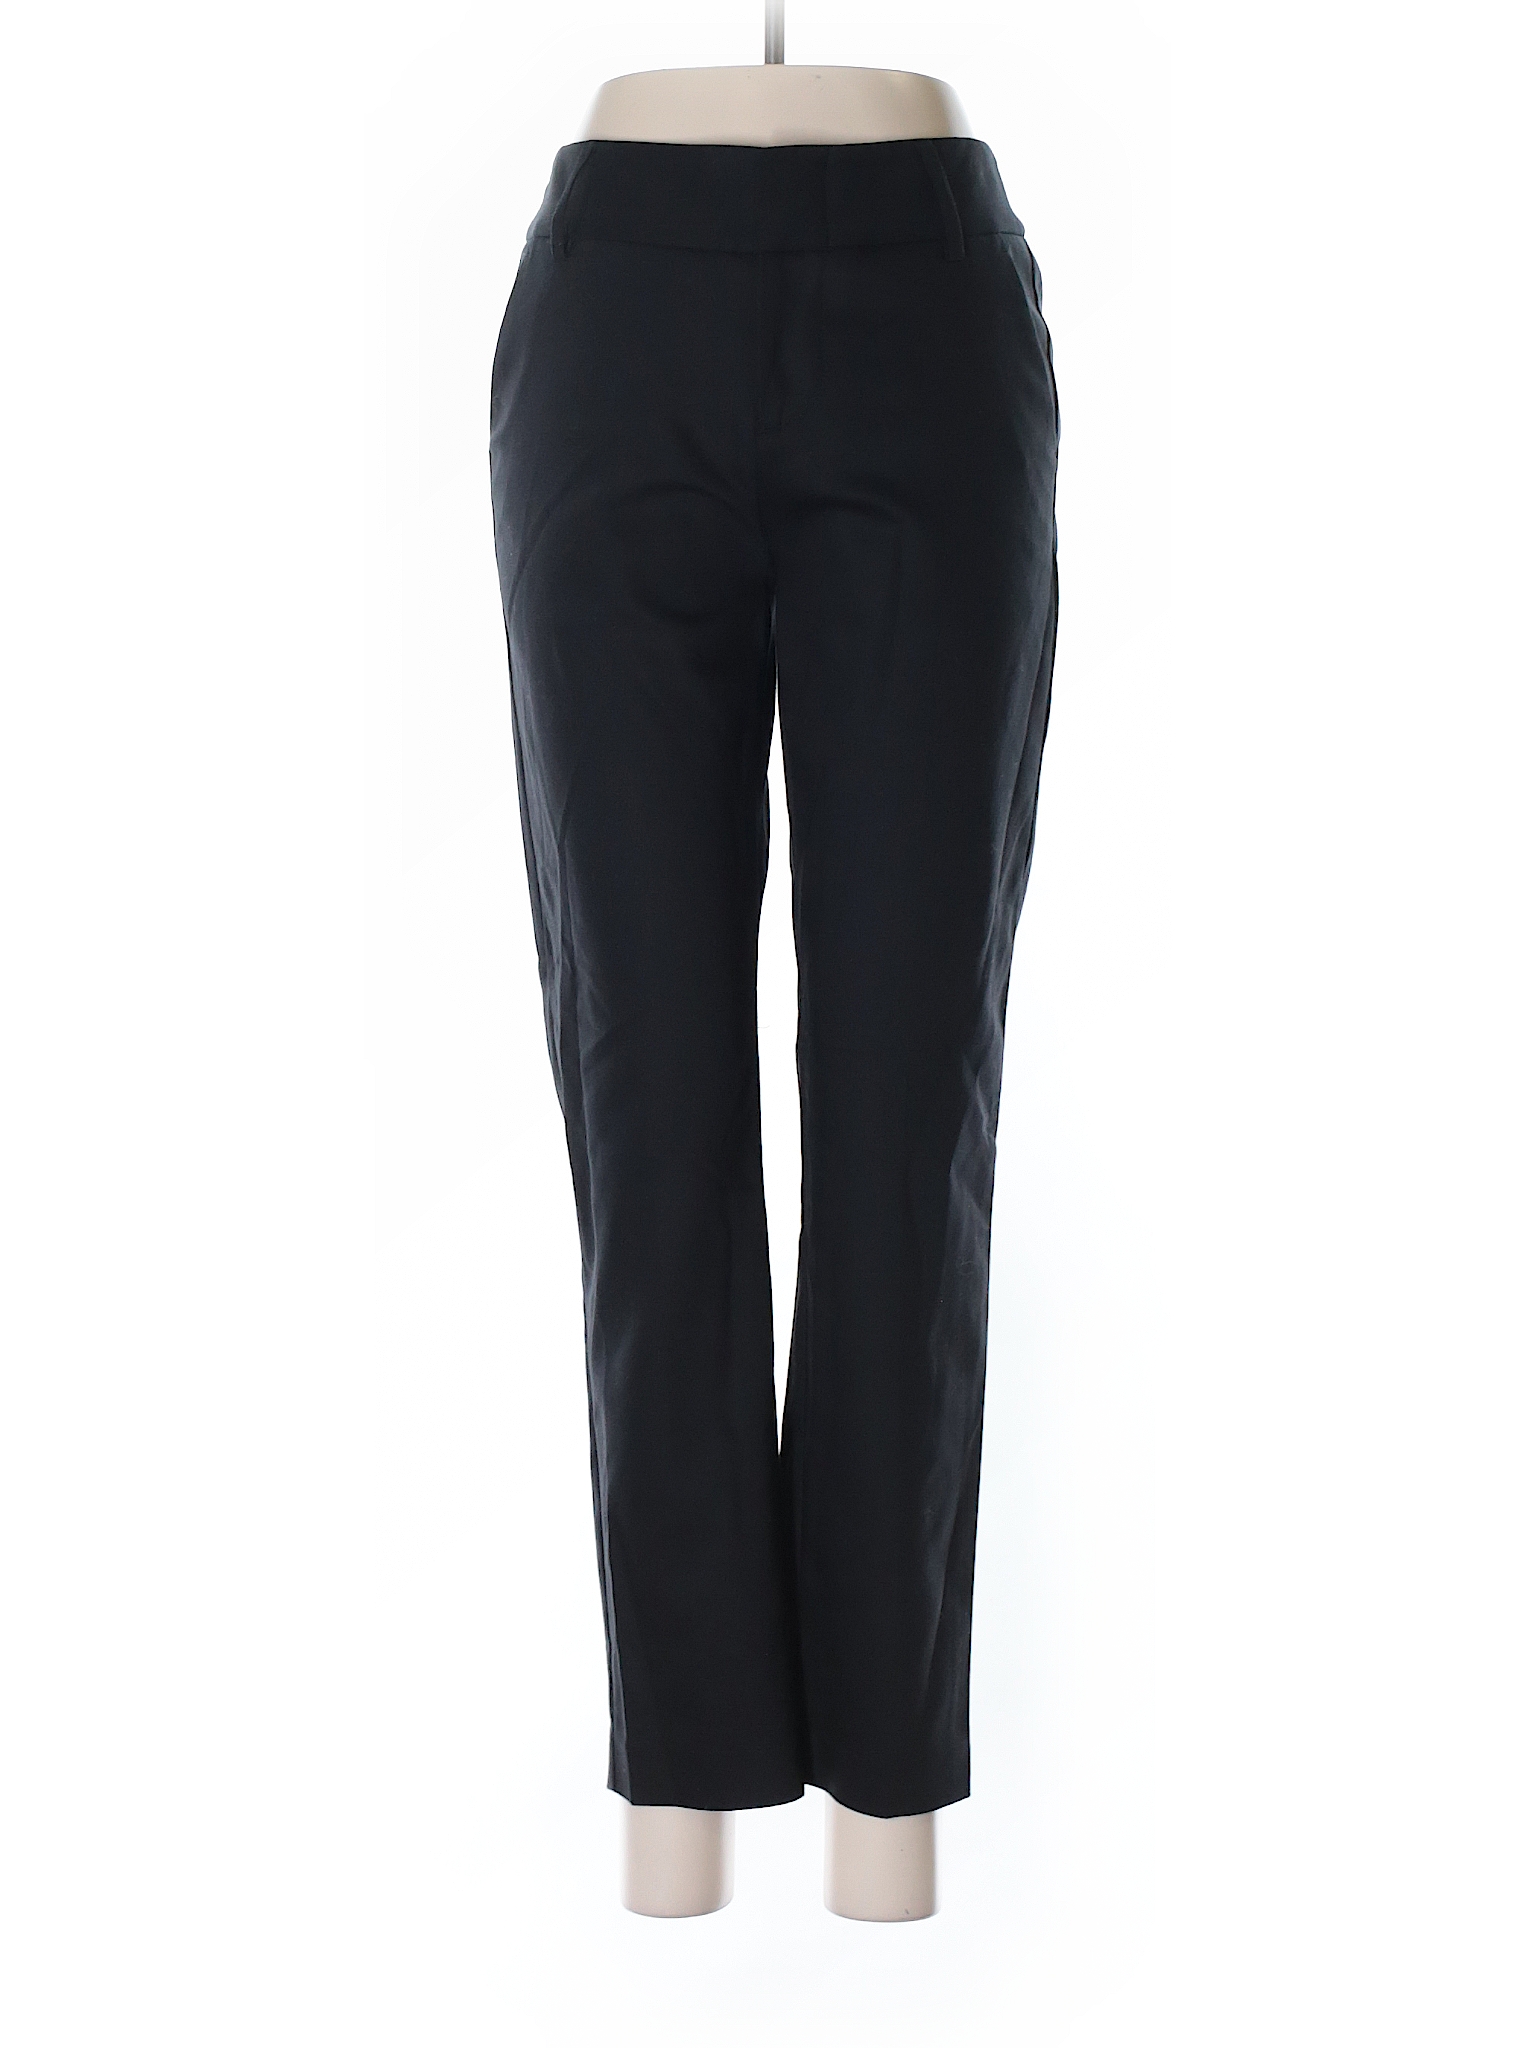 Alice + Olivia Solid Black Dress Pants Size 0 - 92% off | thredUP